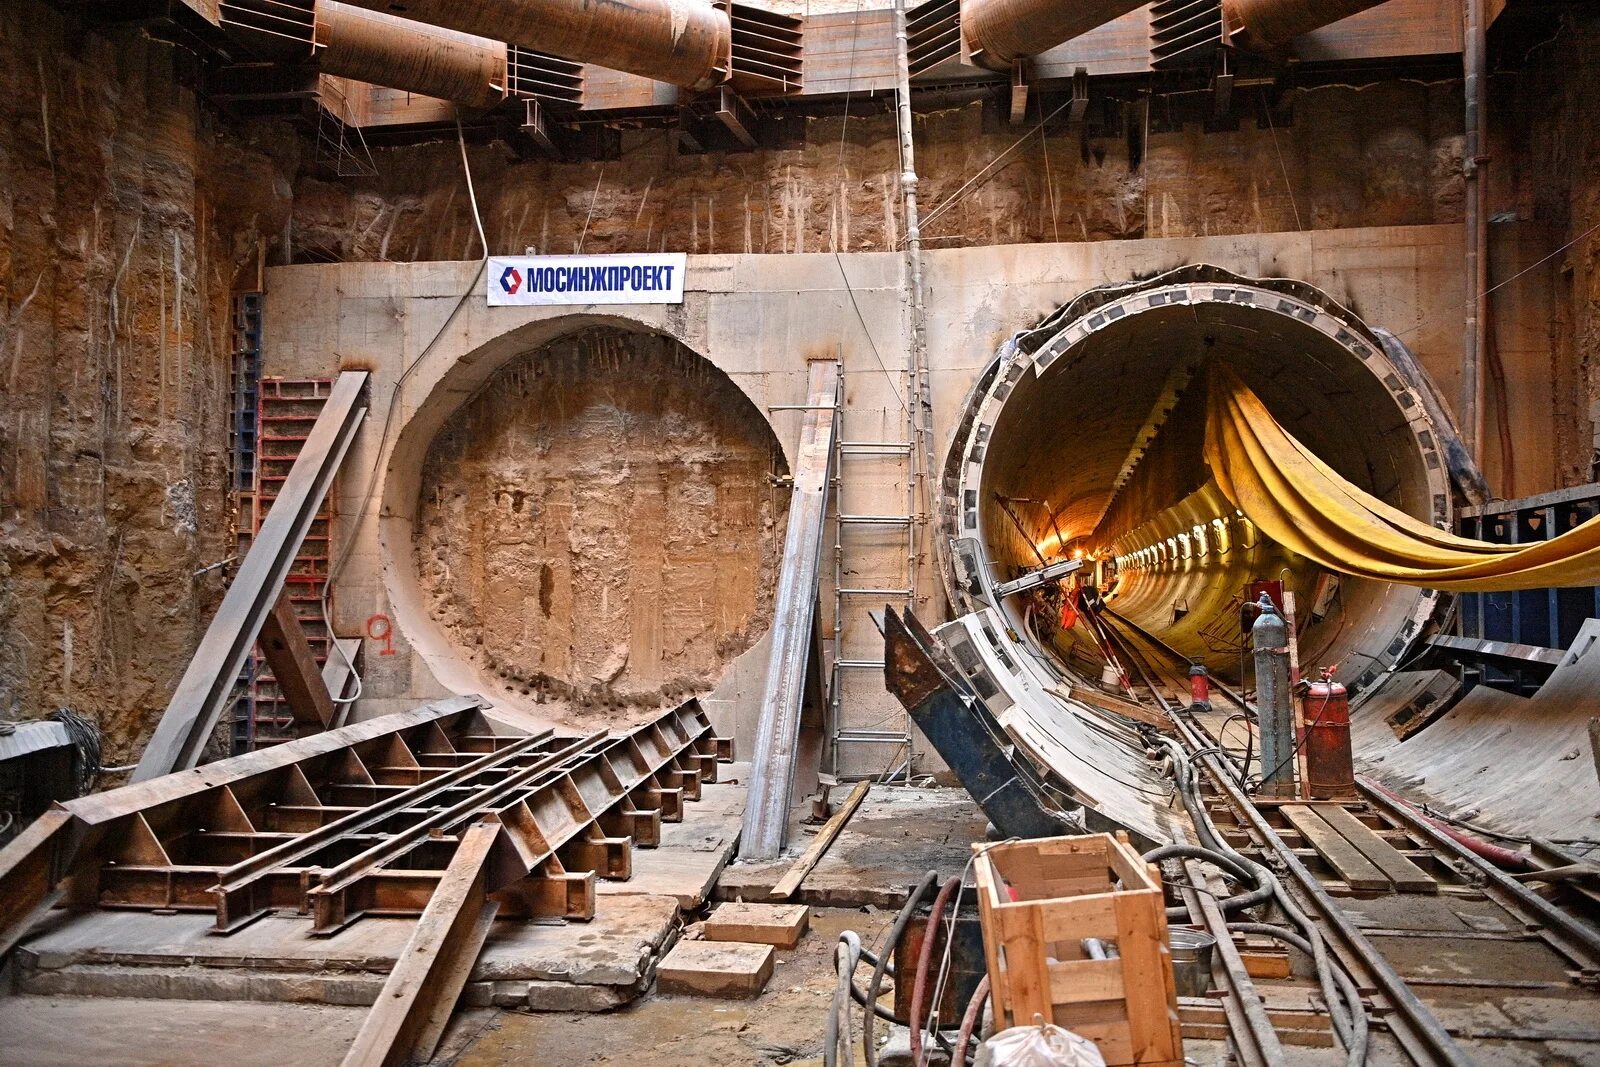 Рабочие прокладывают тоннель 500 3 10. Lovat тоннелепроходческий комплекс. Горнопроходческий комплекс Роббинс Северо-Муйский тоннель.